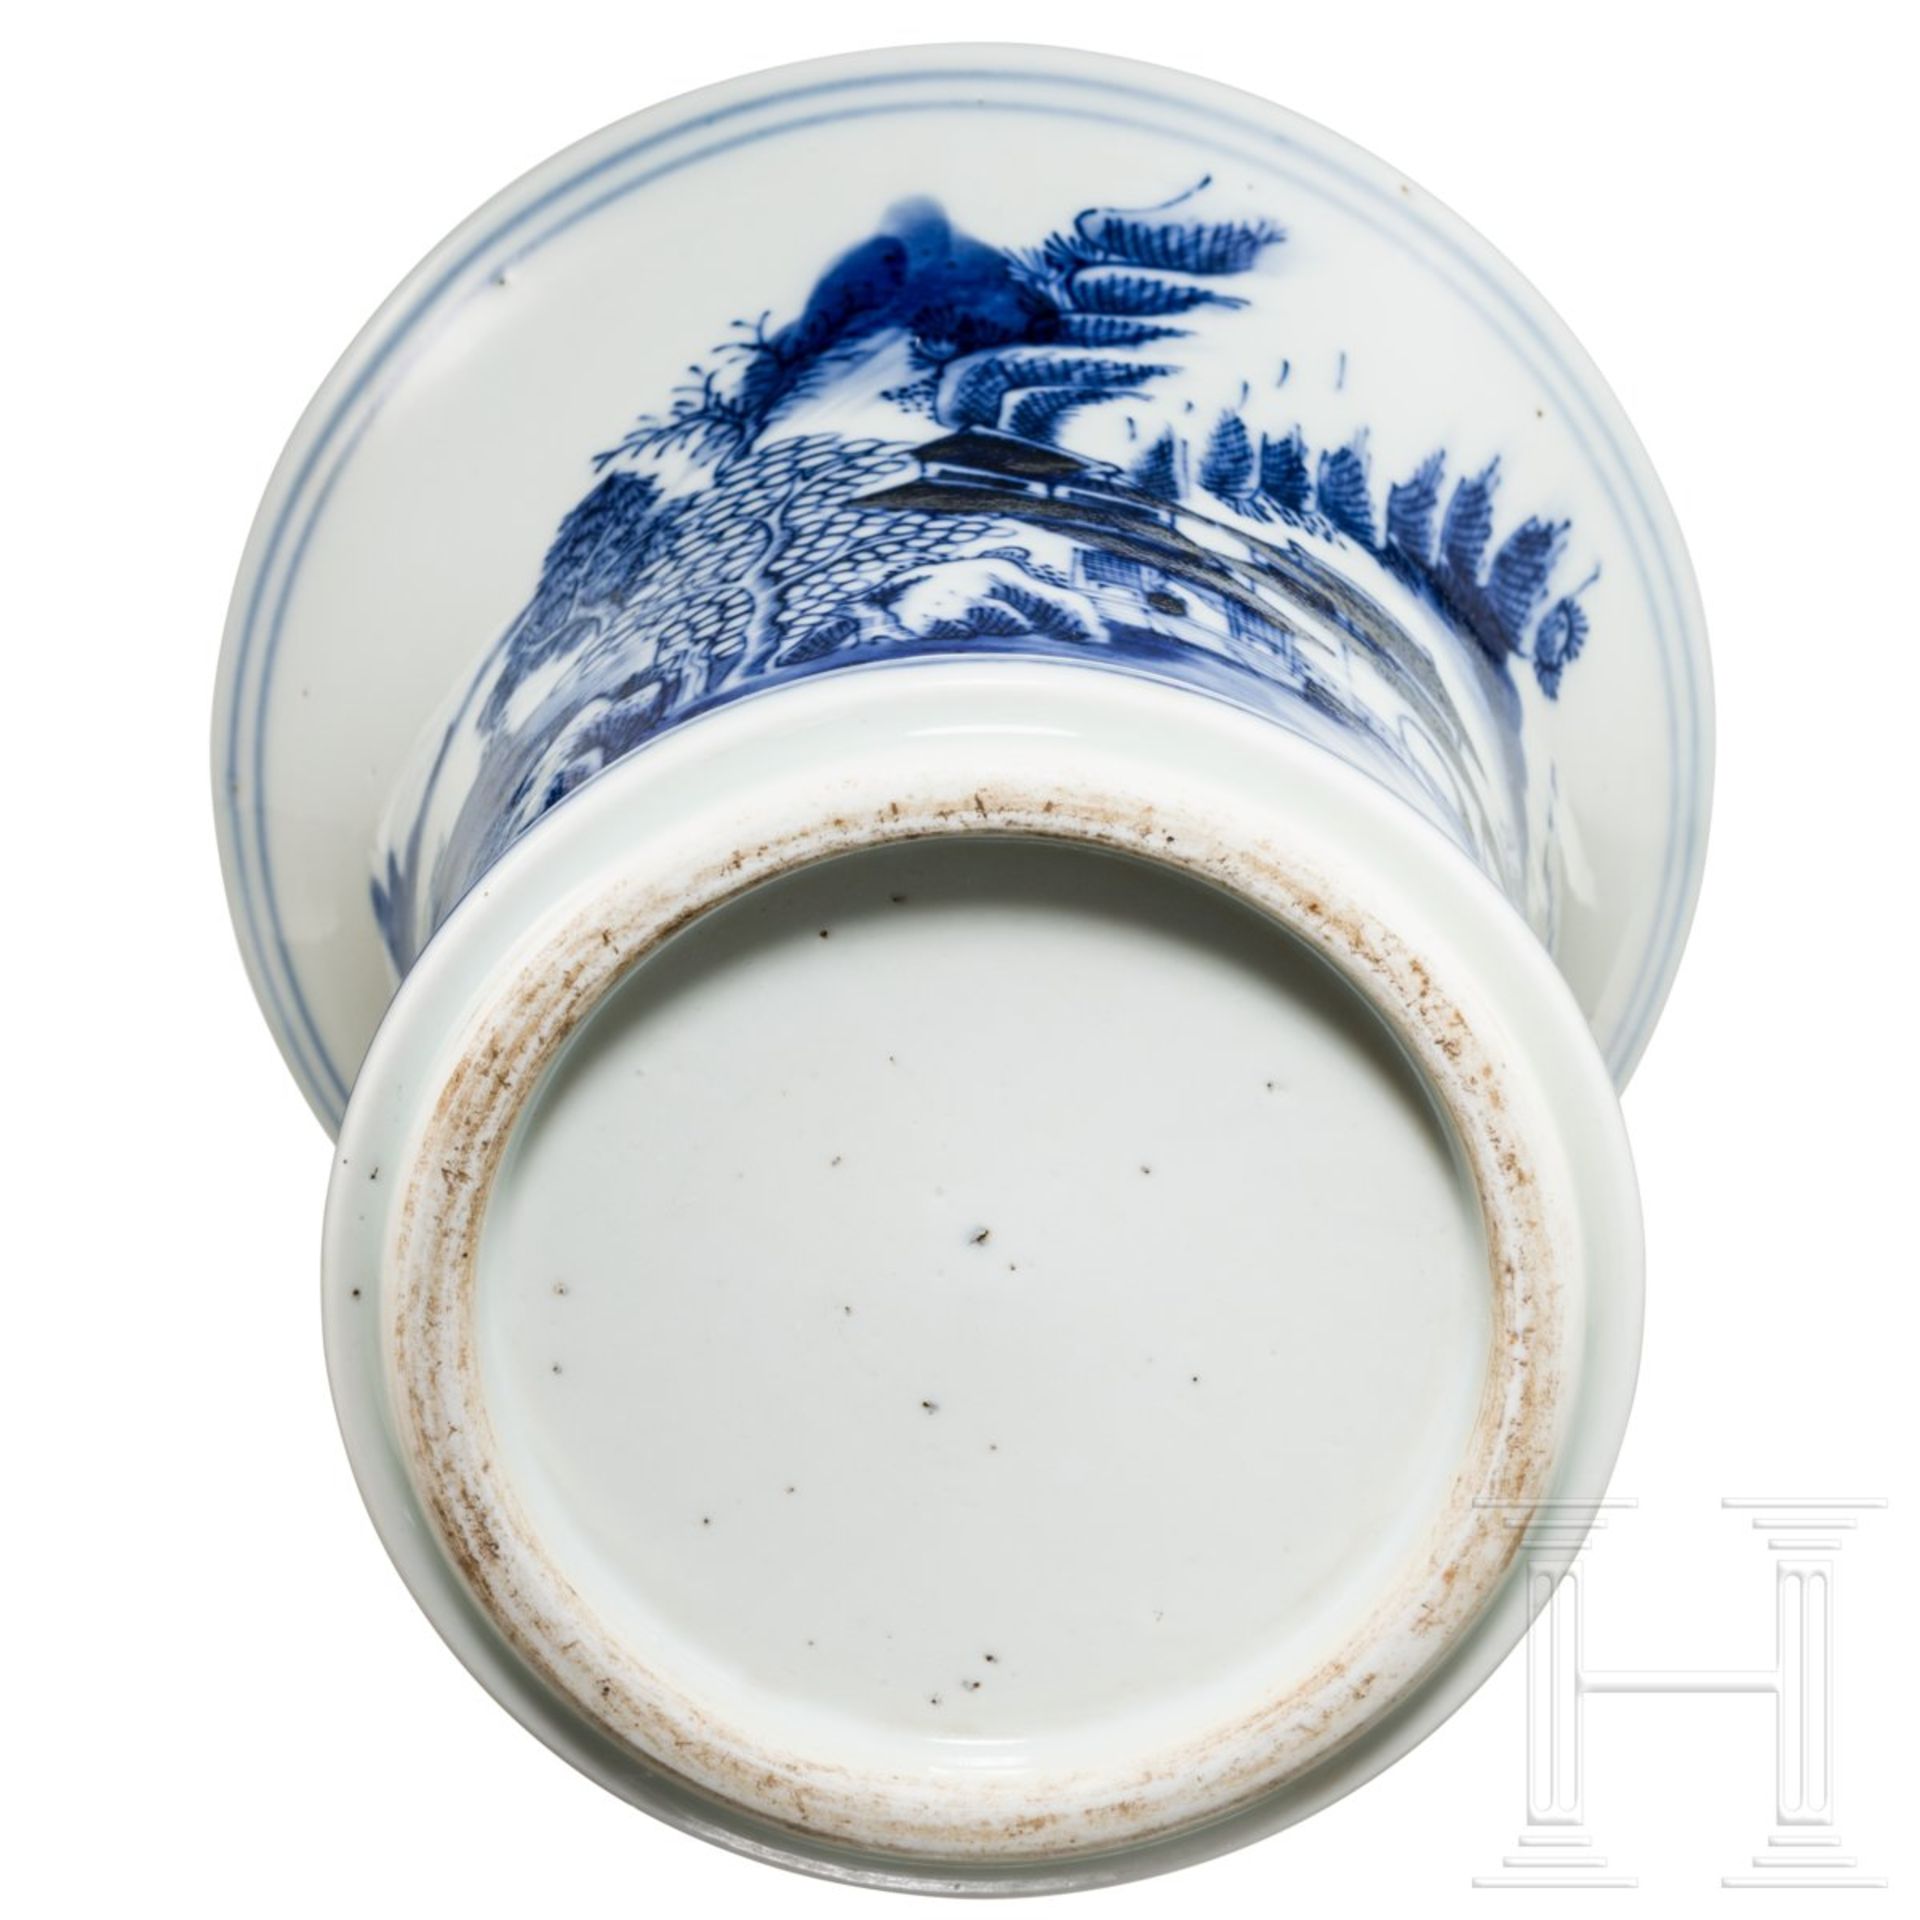 Kleine Gu-Vase mit Landschaftsszene blau auf weiß, China, späte Qing-Zeit - Bild 7 aus 7